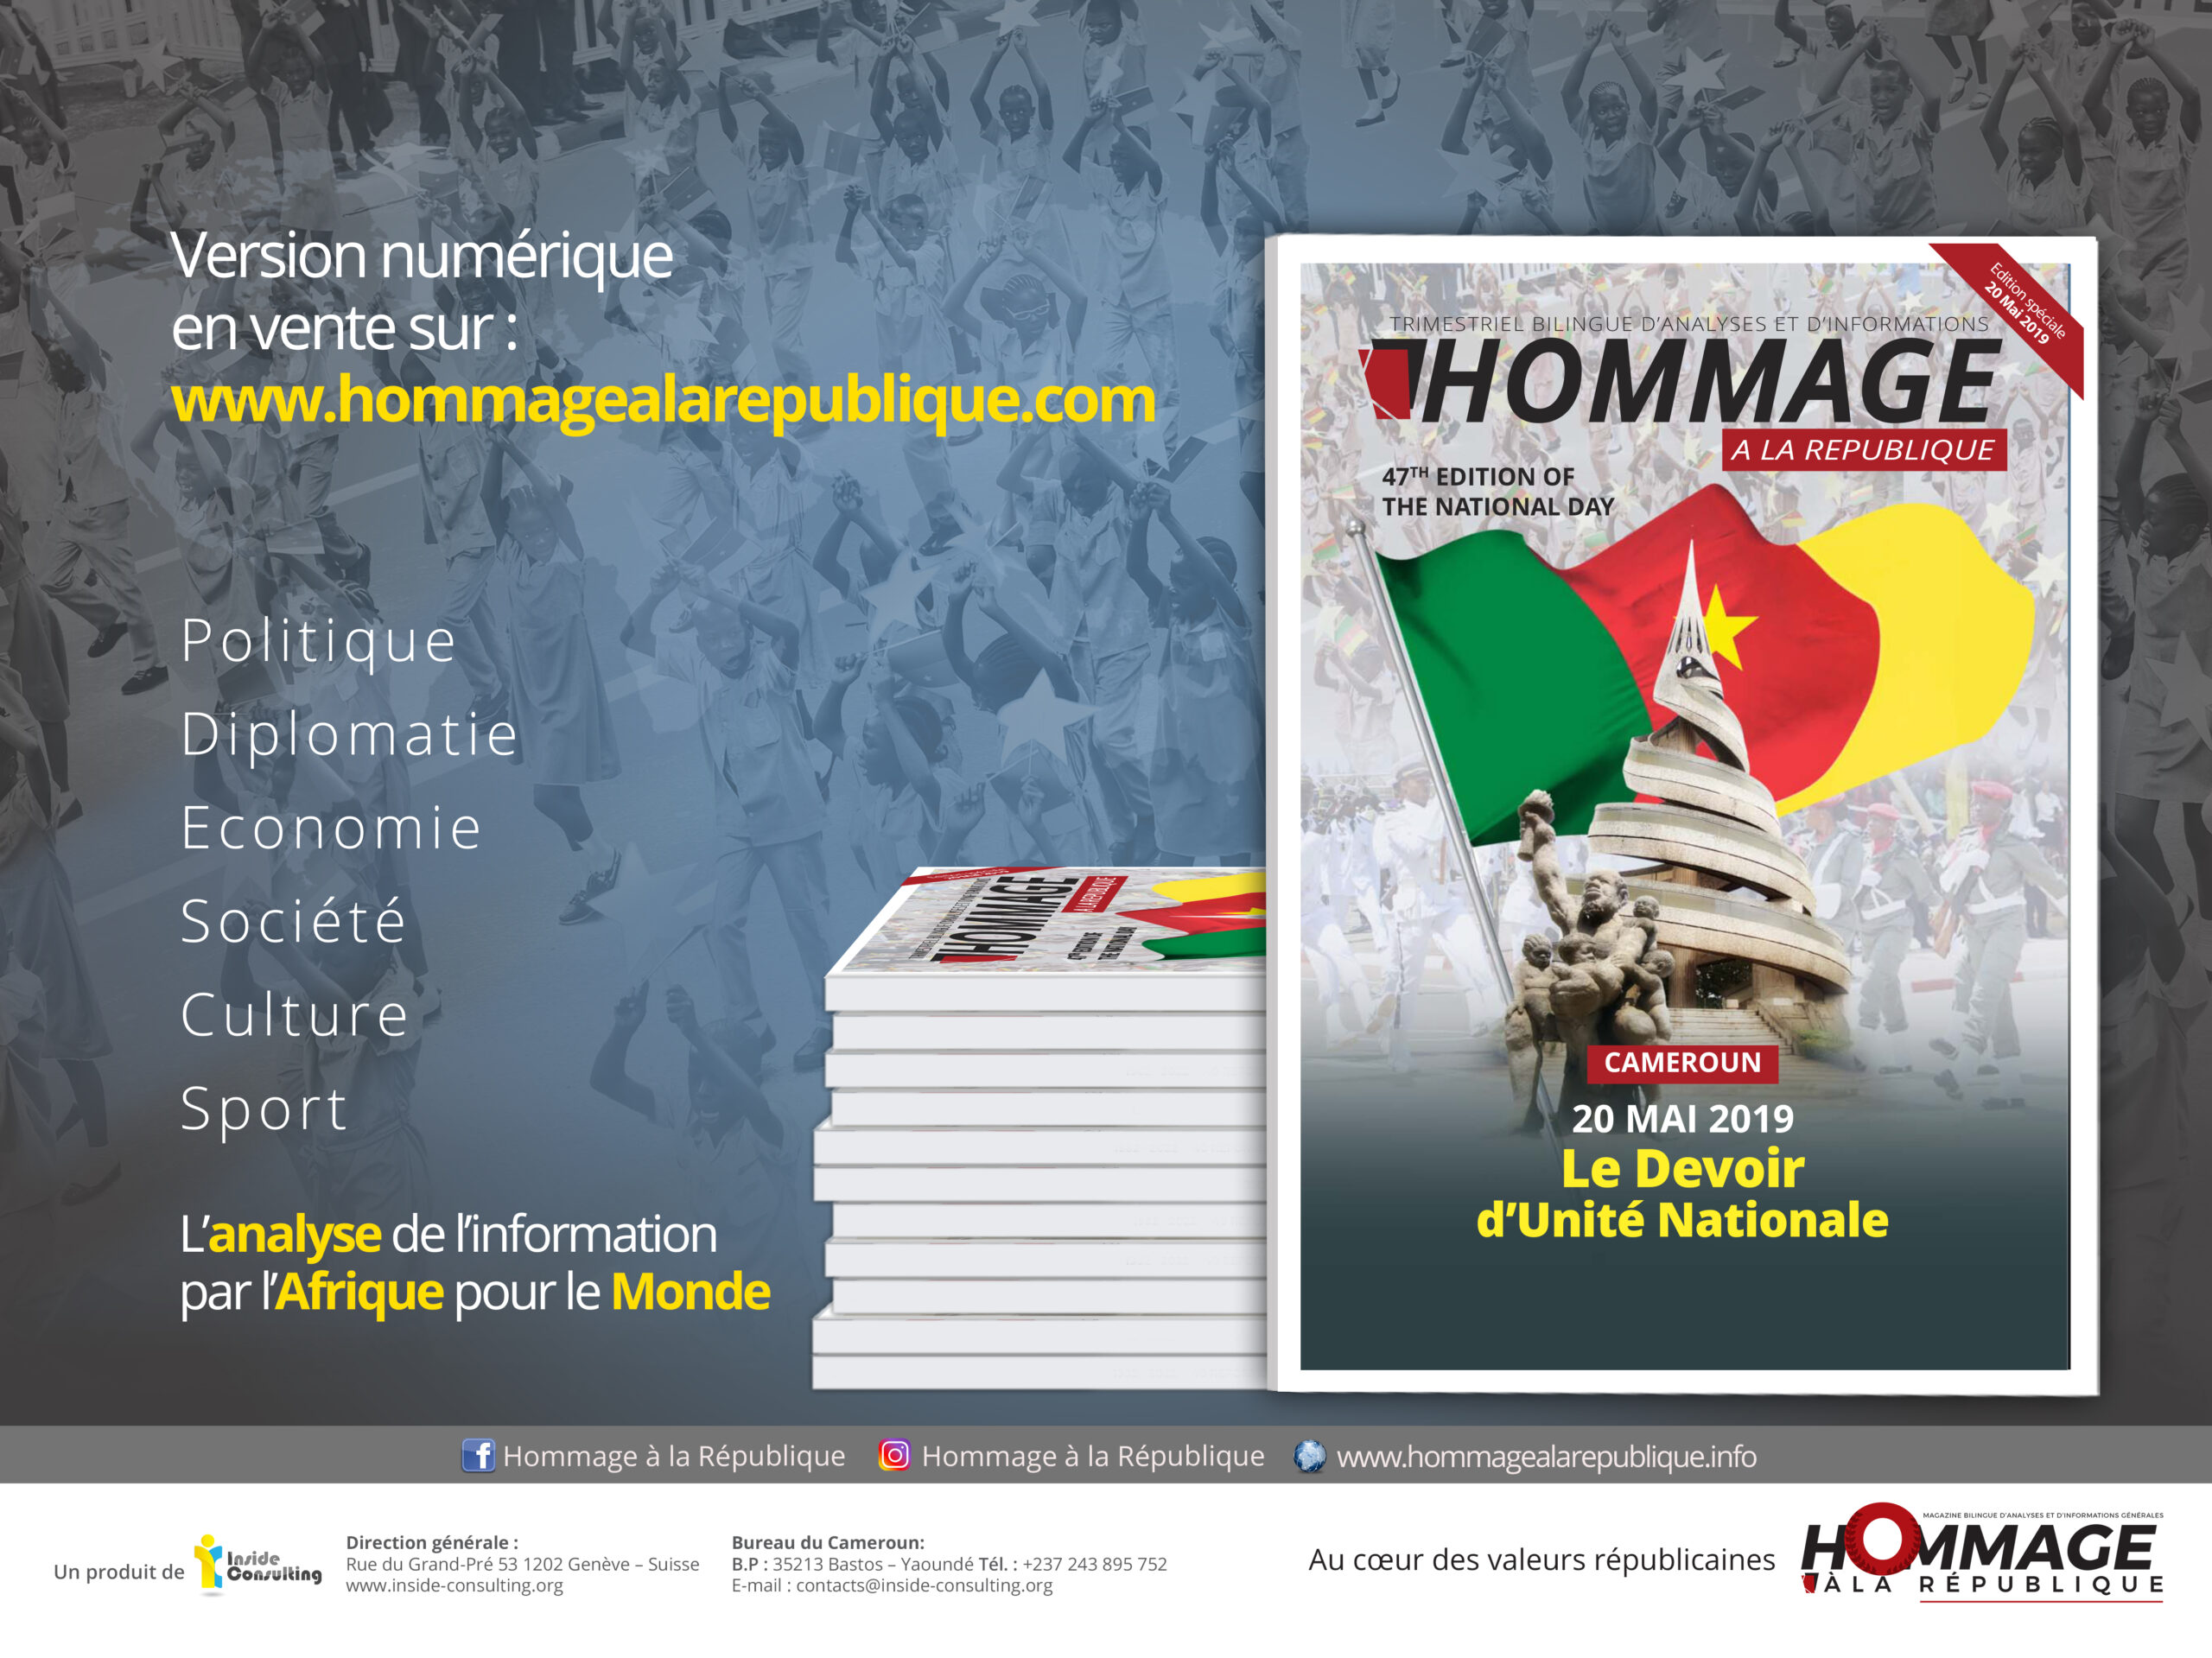 HOMMAGE À LA RÉPUBLIQUE CAMEROUN 20 MAI 2019, LE DEVOIR D’UNITÉ NATIONALE